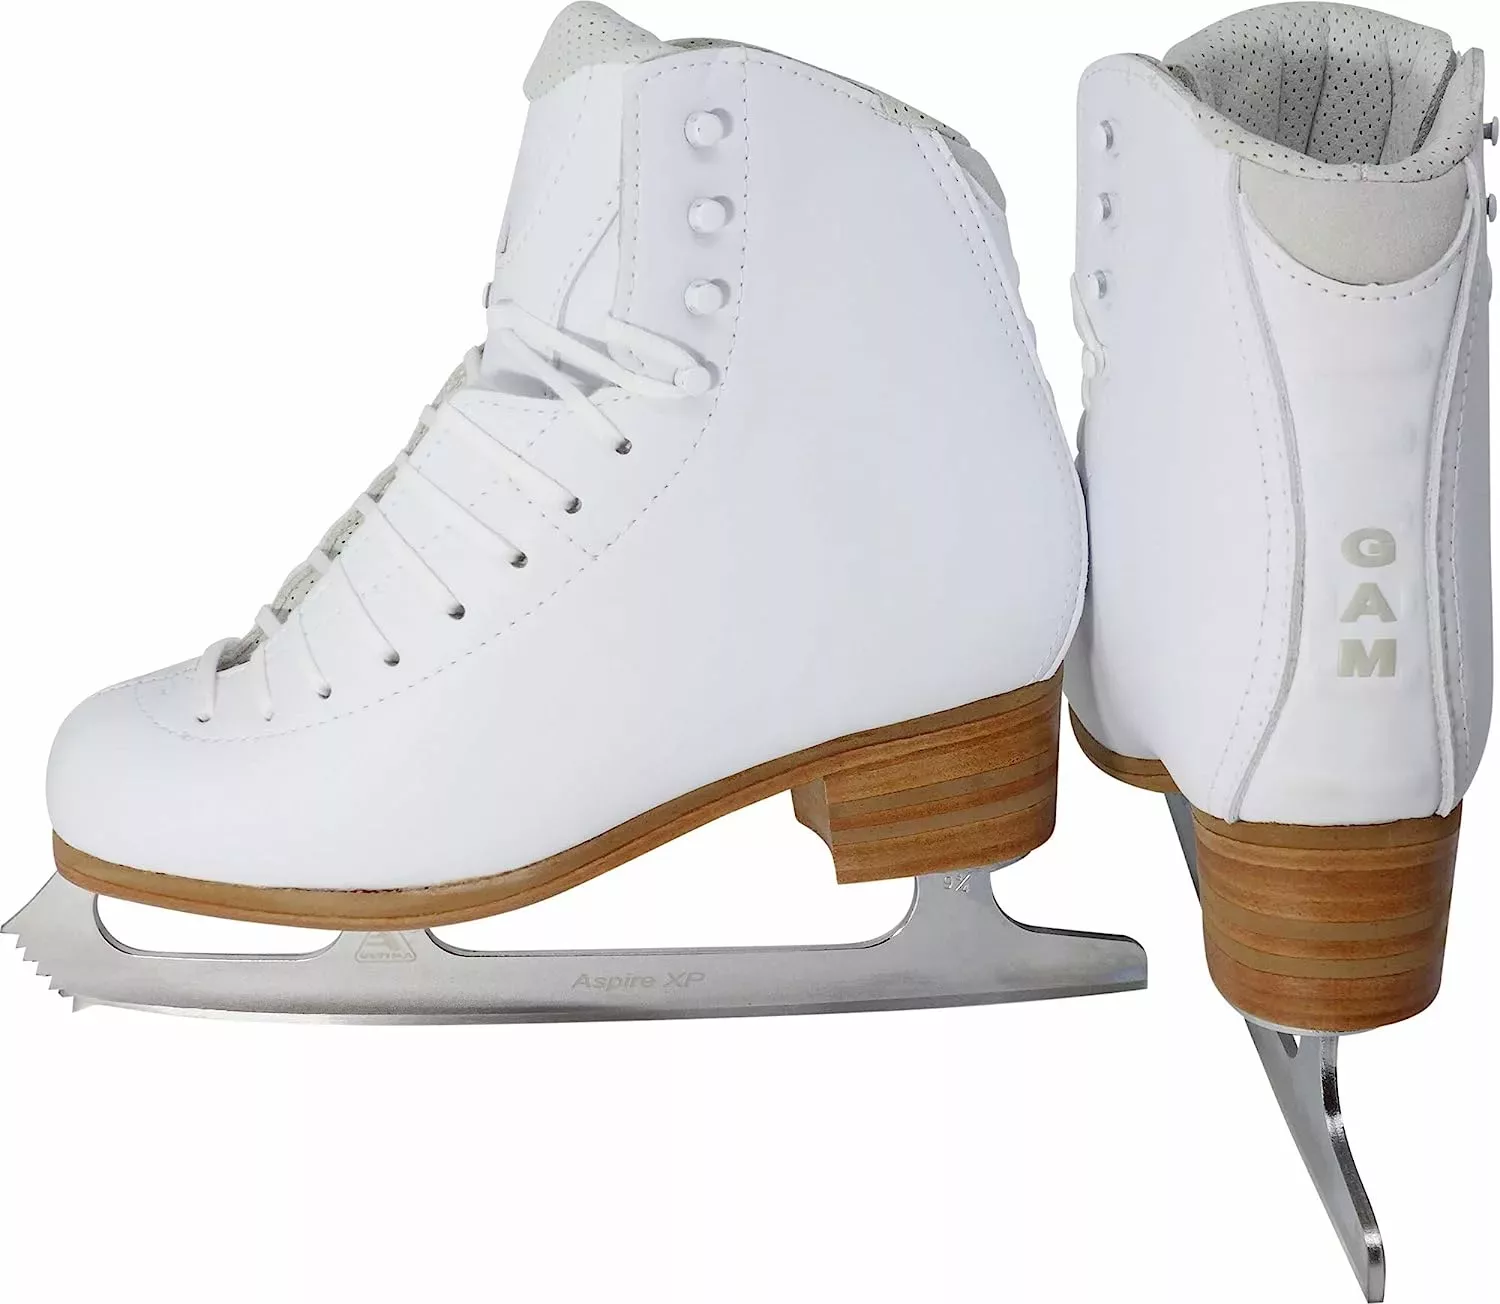 GAM Silver Label G0780 Bottes de patinage artistique pour femme Patins à glace Blade Aspire XP